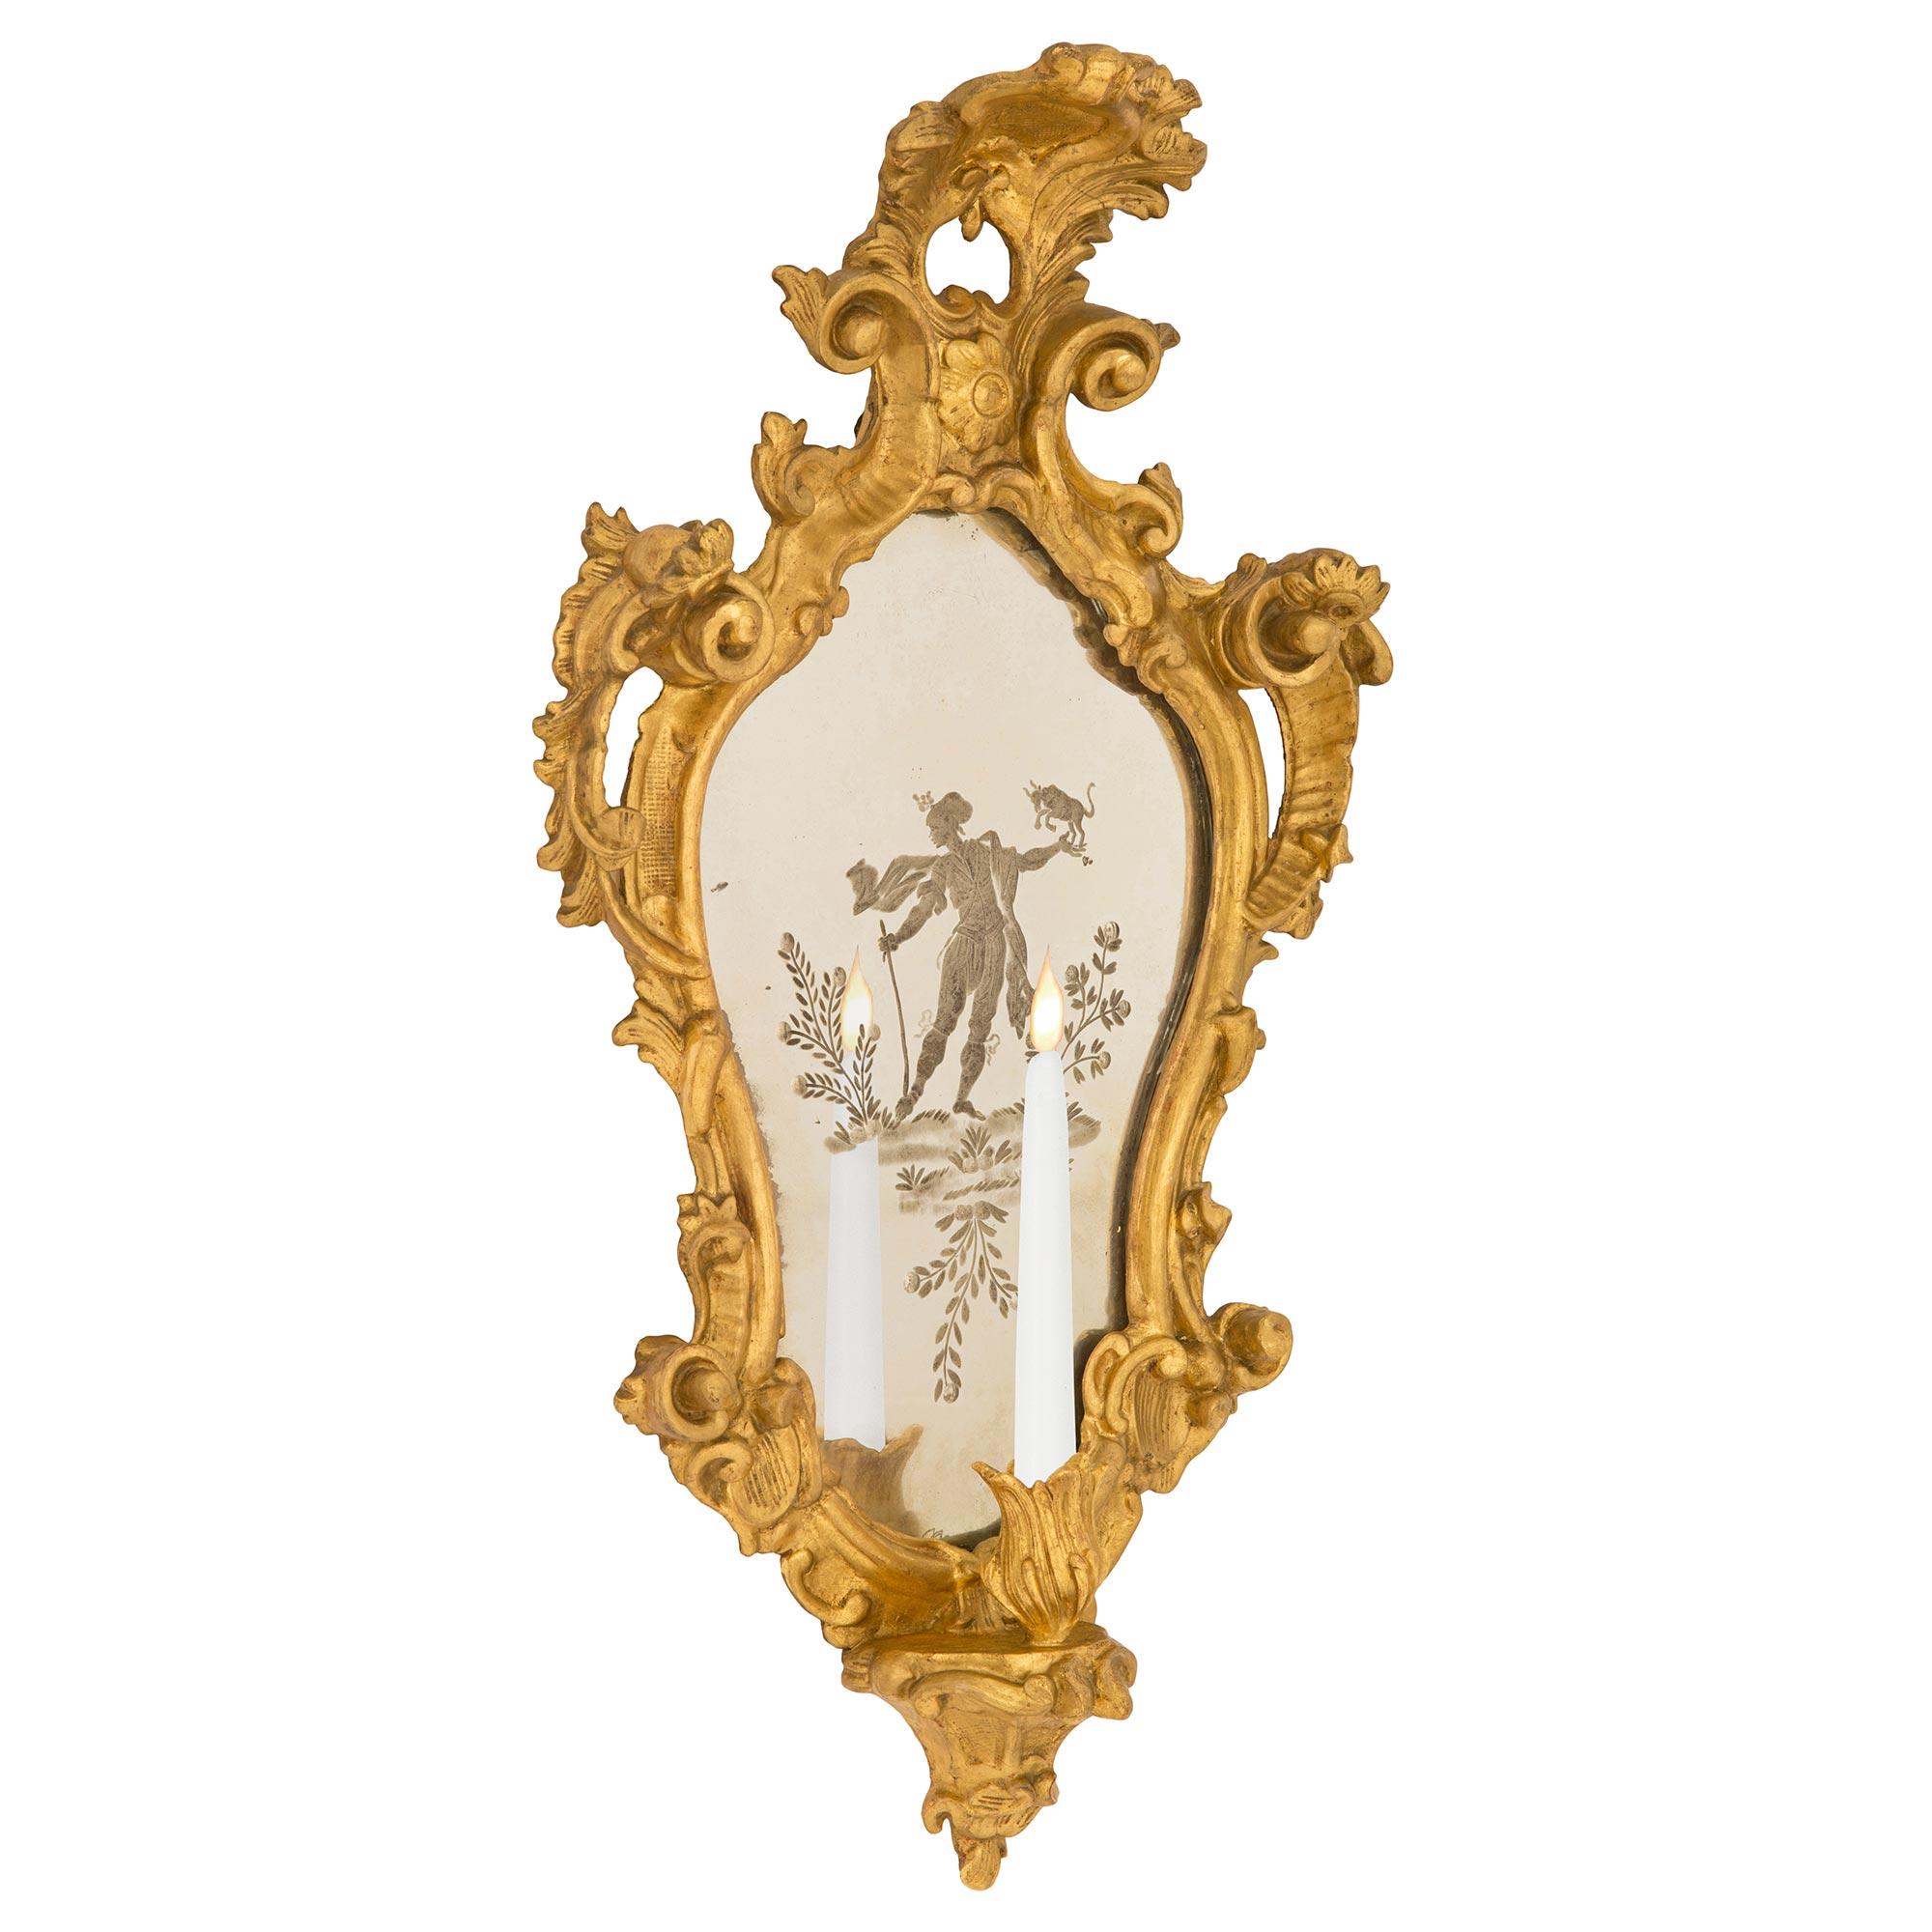 Une merveilleuse paire d'appliques italiennes du début du 19ème siècle en bois doré et miroir gravé. Chaque belle applique à bras unique présente un charmant bras foliacé richement sculpté à la base, avec des mouvements marbrés à volutes